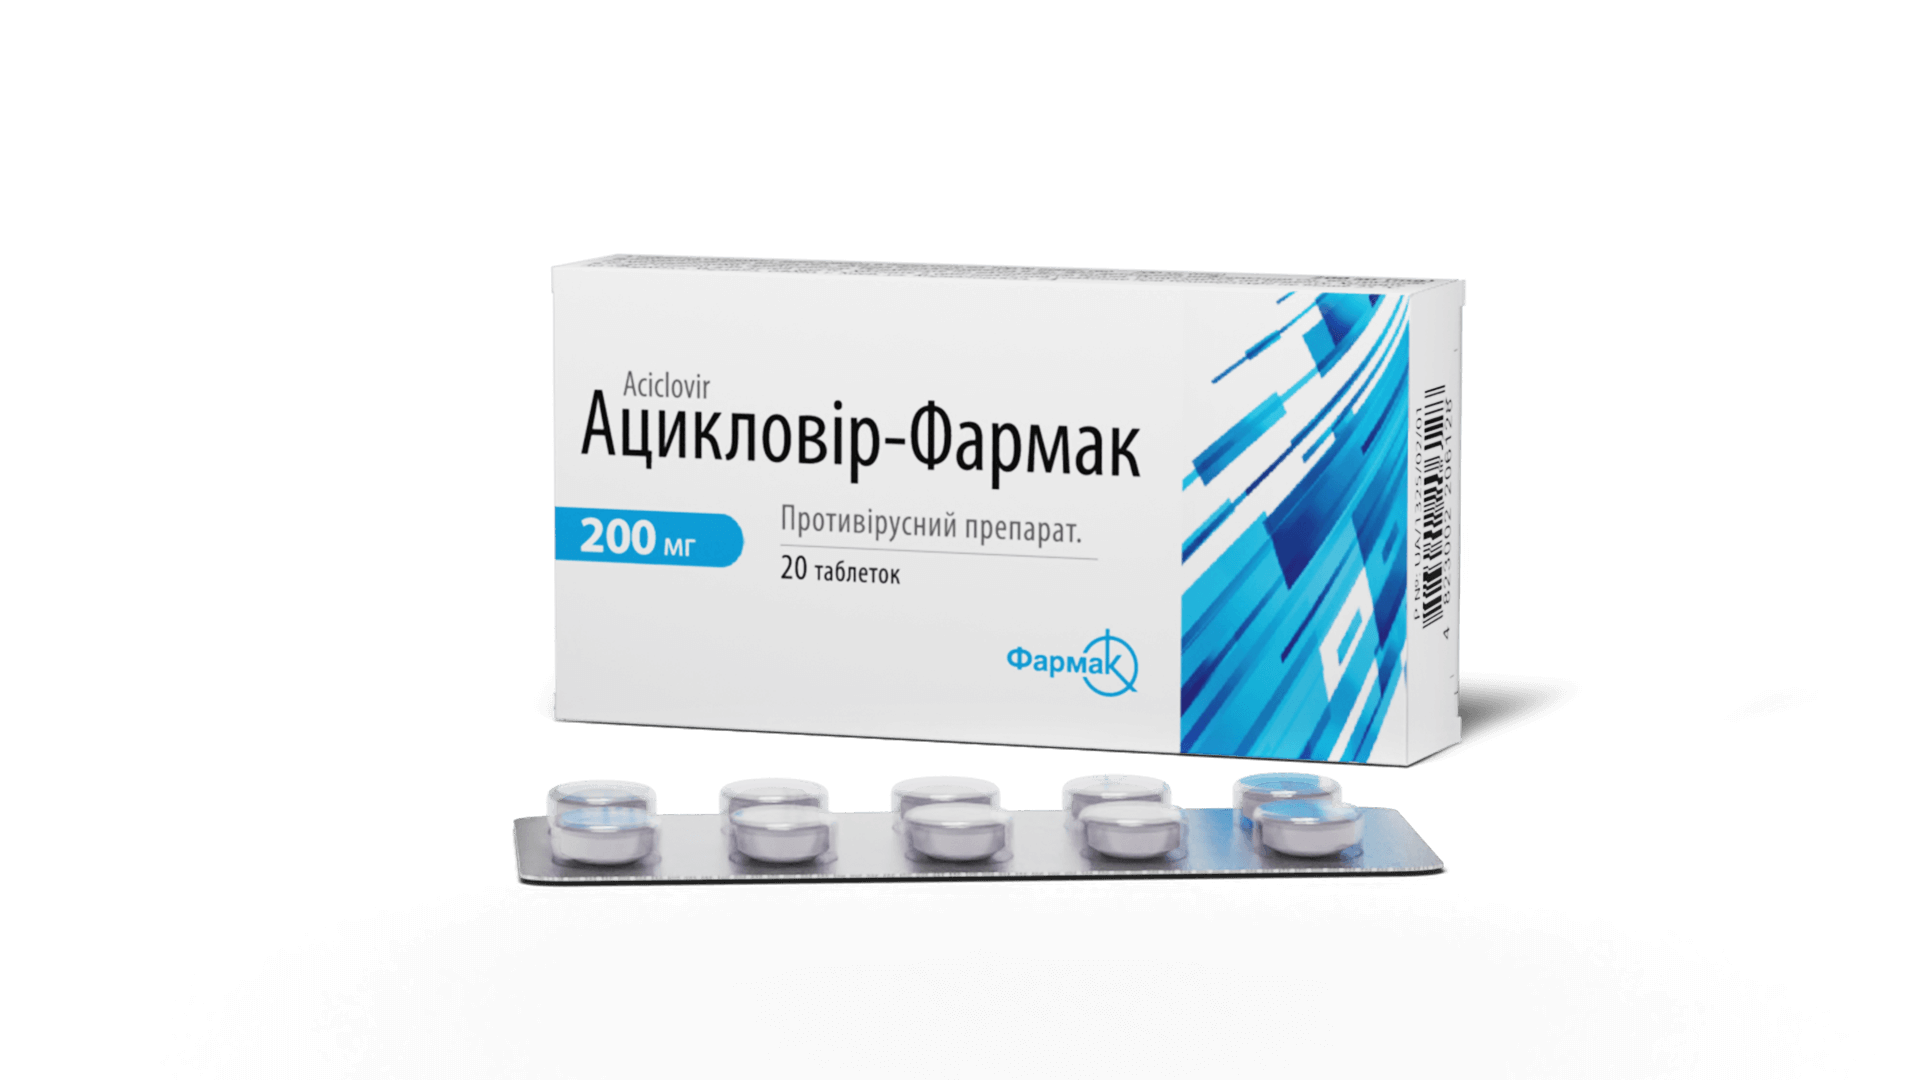 Ацикловир-Фармак (3)